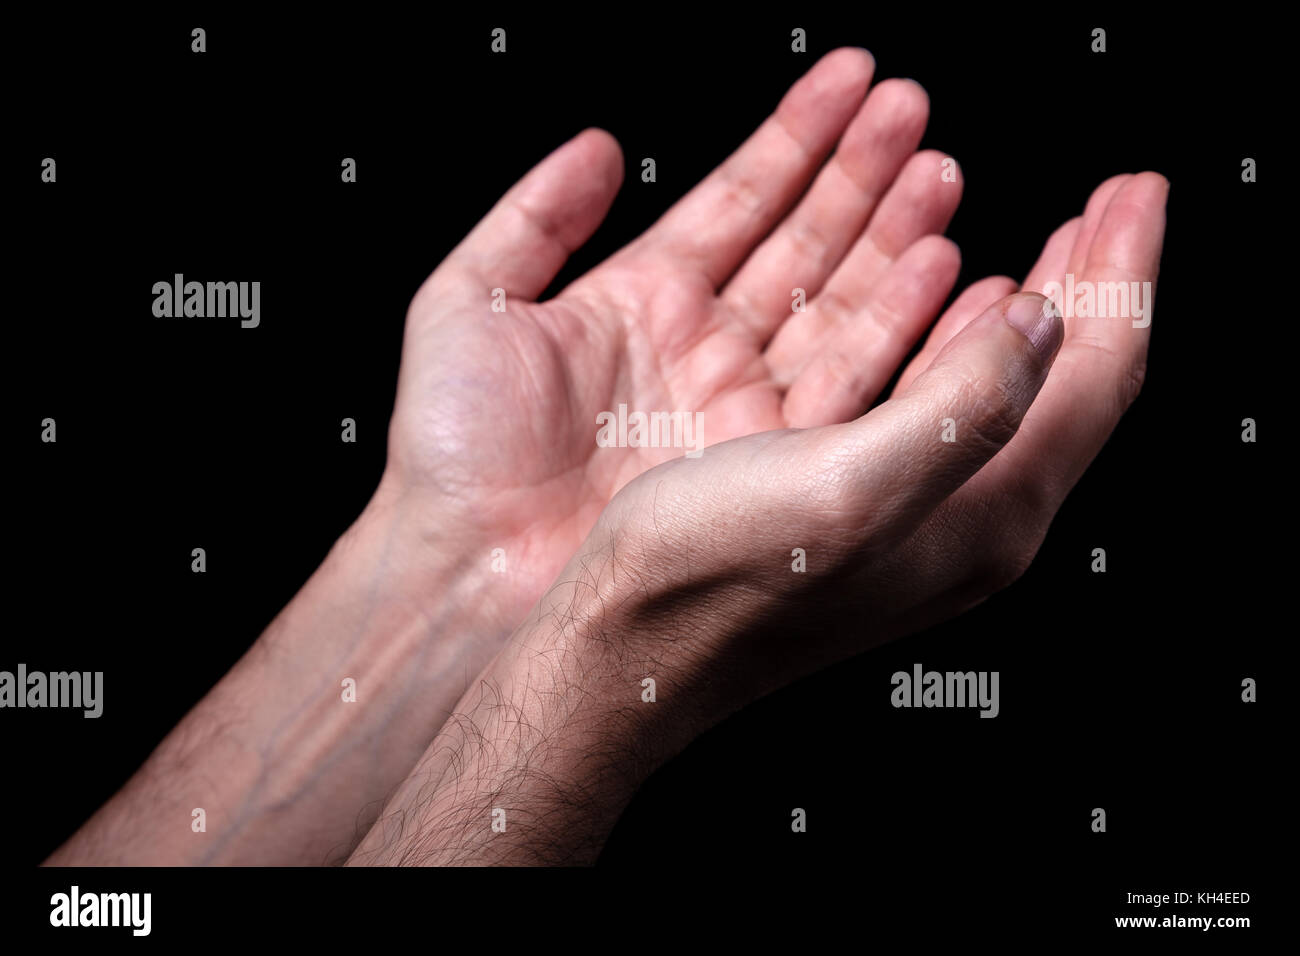 Männliche Hände betend mit Handflächen nach oben ausgestreckten Armen. schwarzer Hintergrund. Nahaufnahme der Hand. Konzept für Gebet, Glauben, Religion, religiös, Anbetung Stockfoto